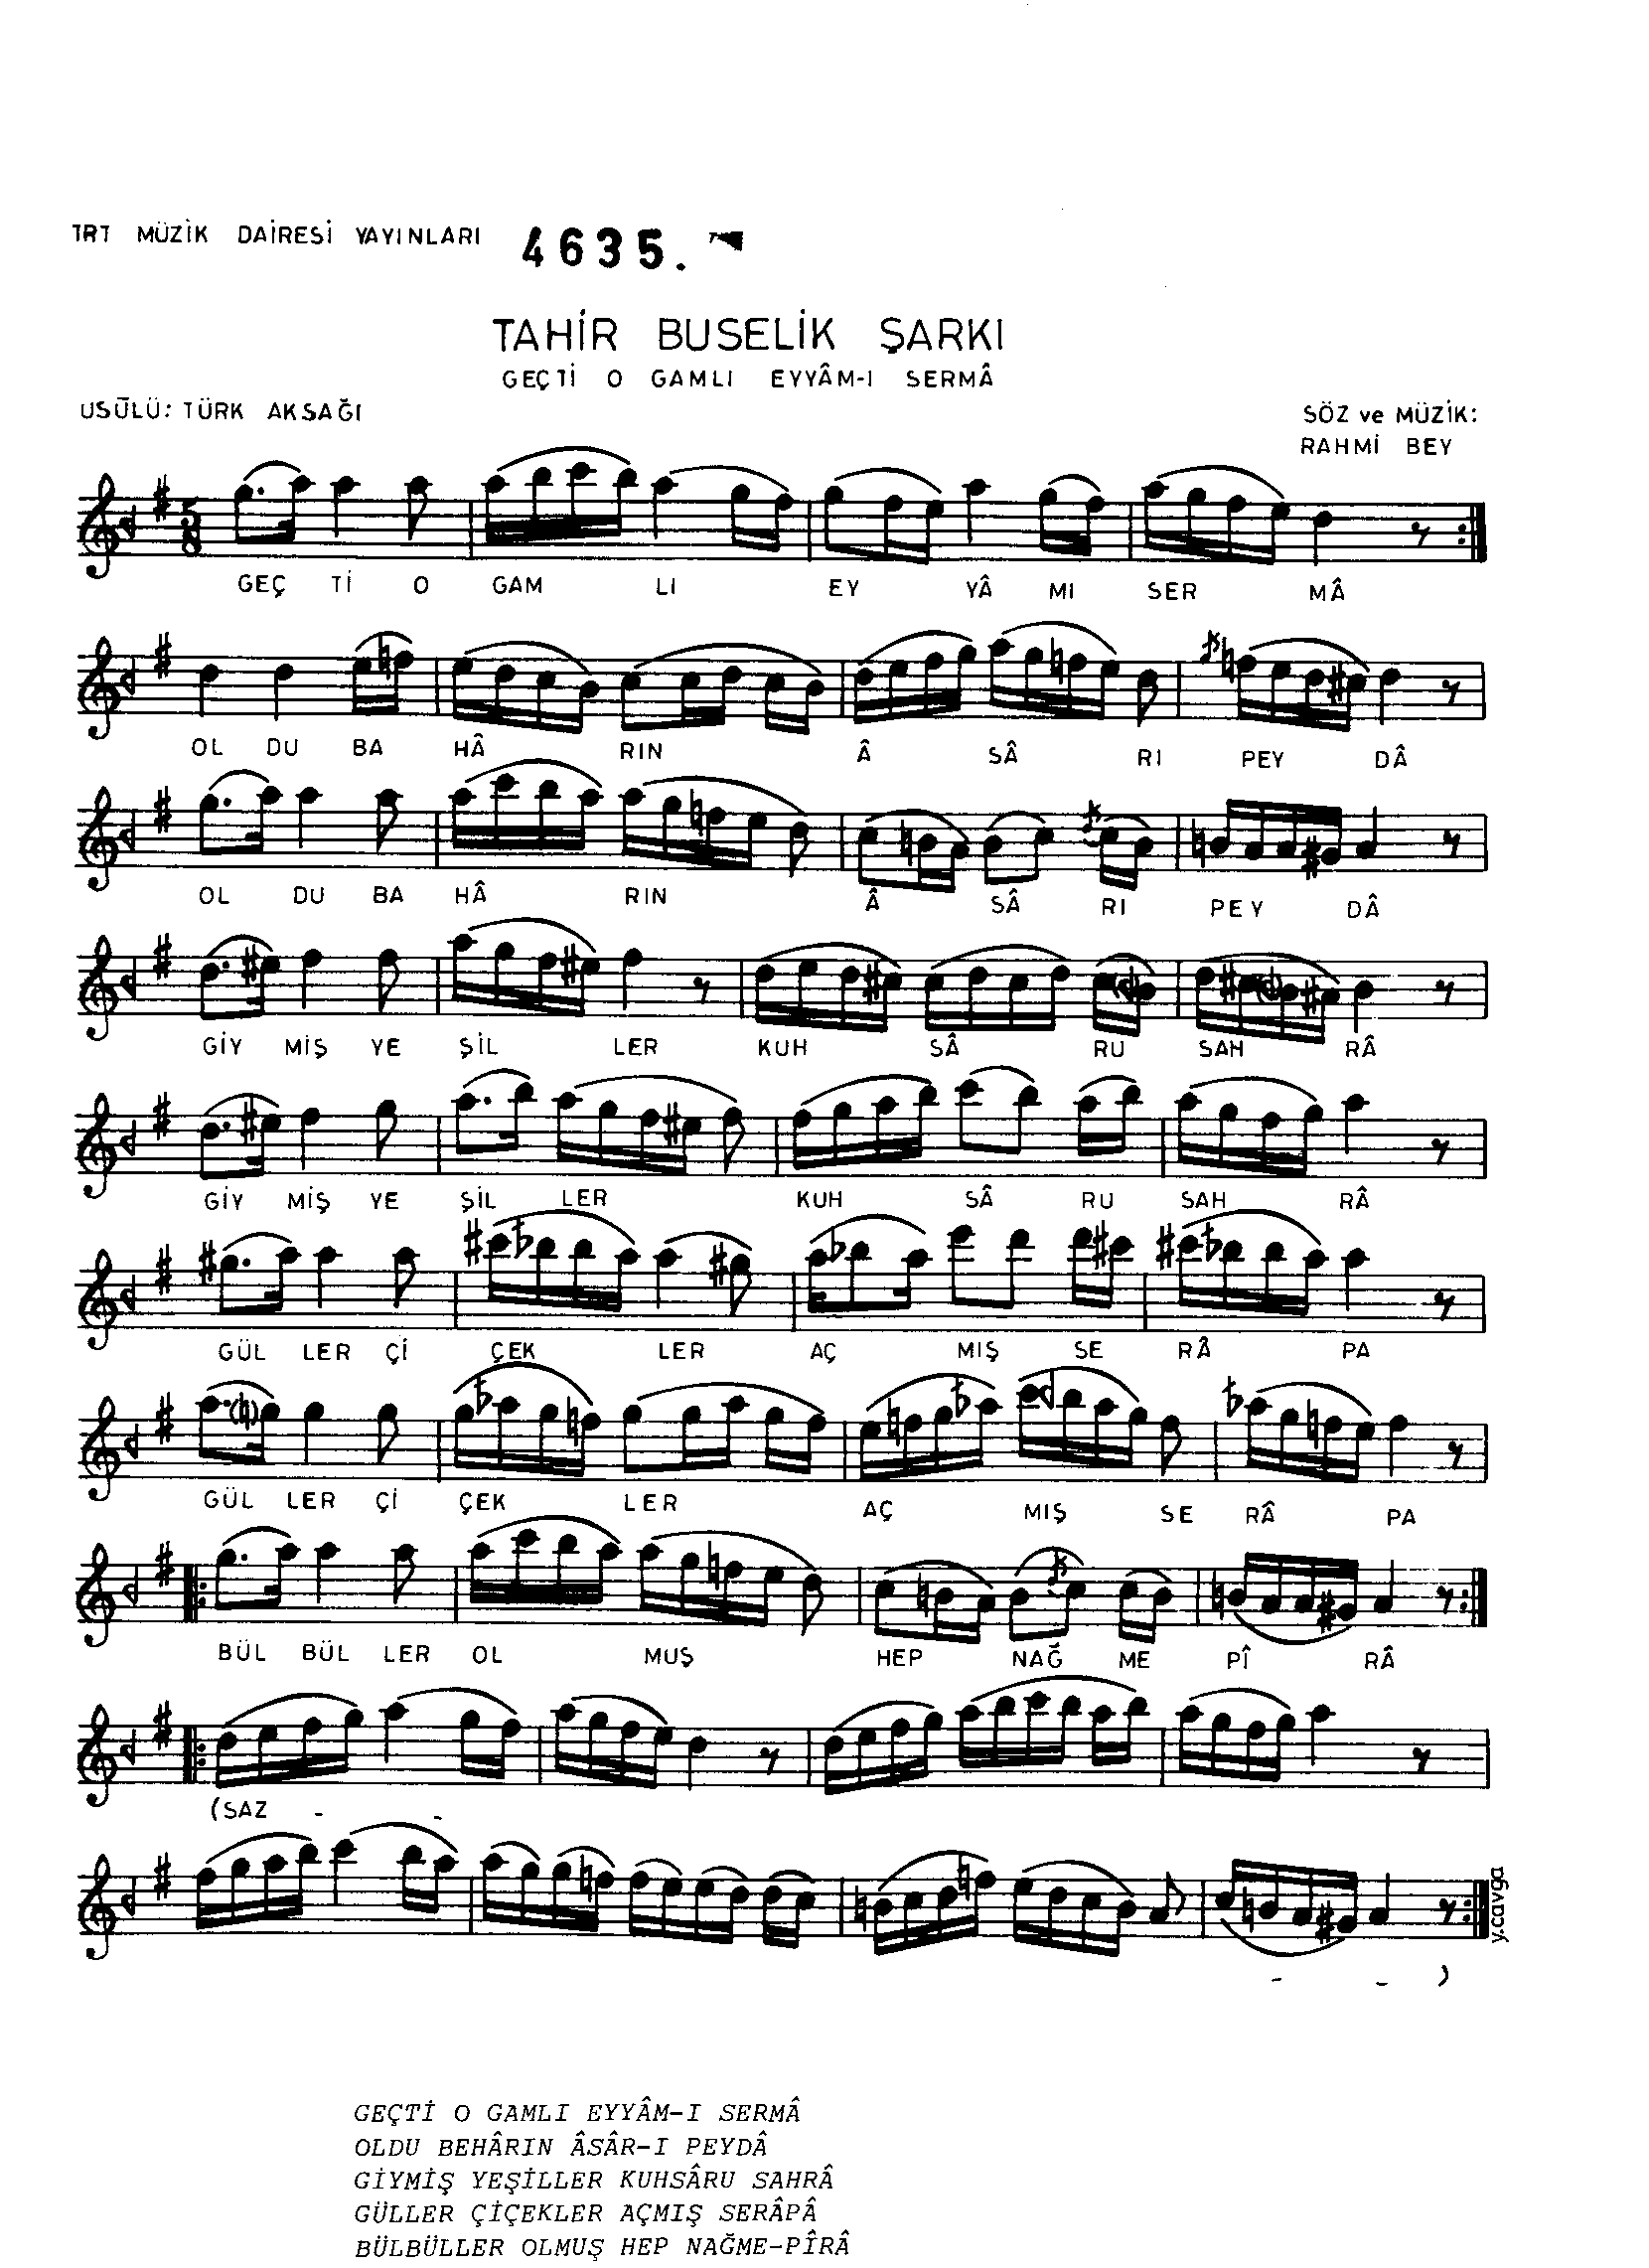 Tâhir-Bûselik - Şarkı - Rahmi Bey - Sayfa 1